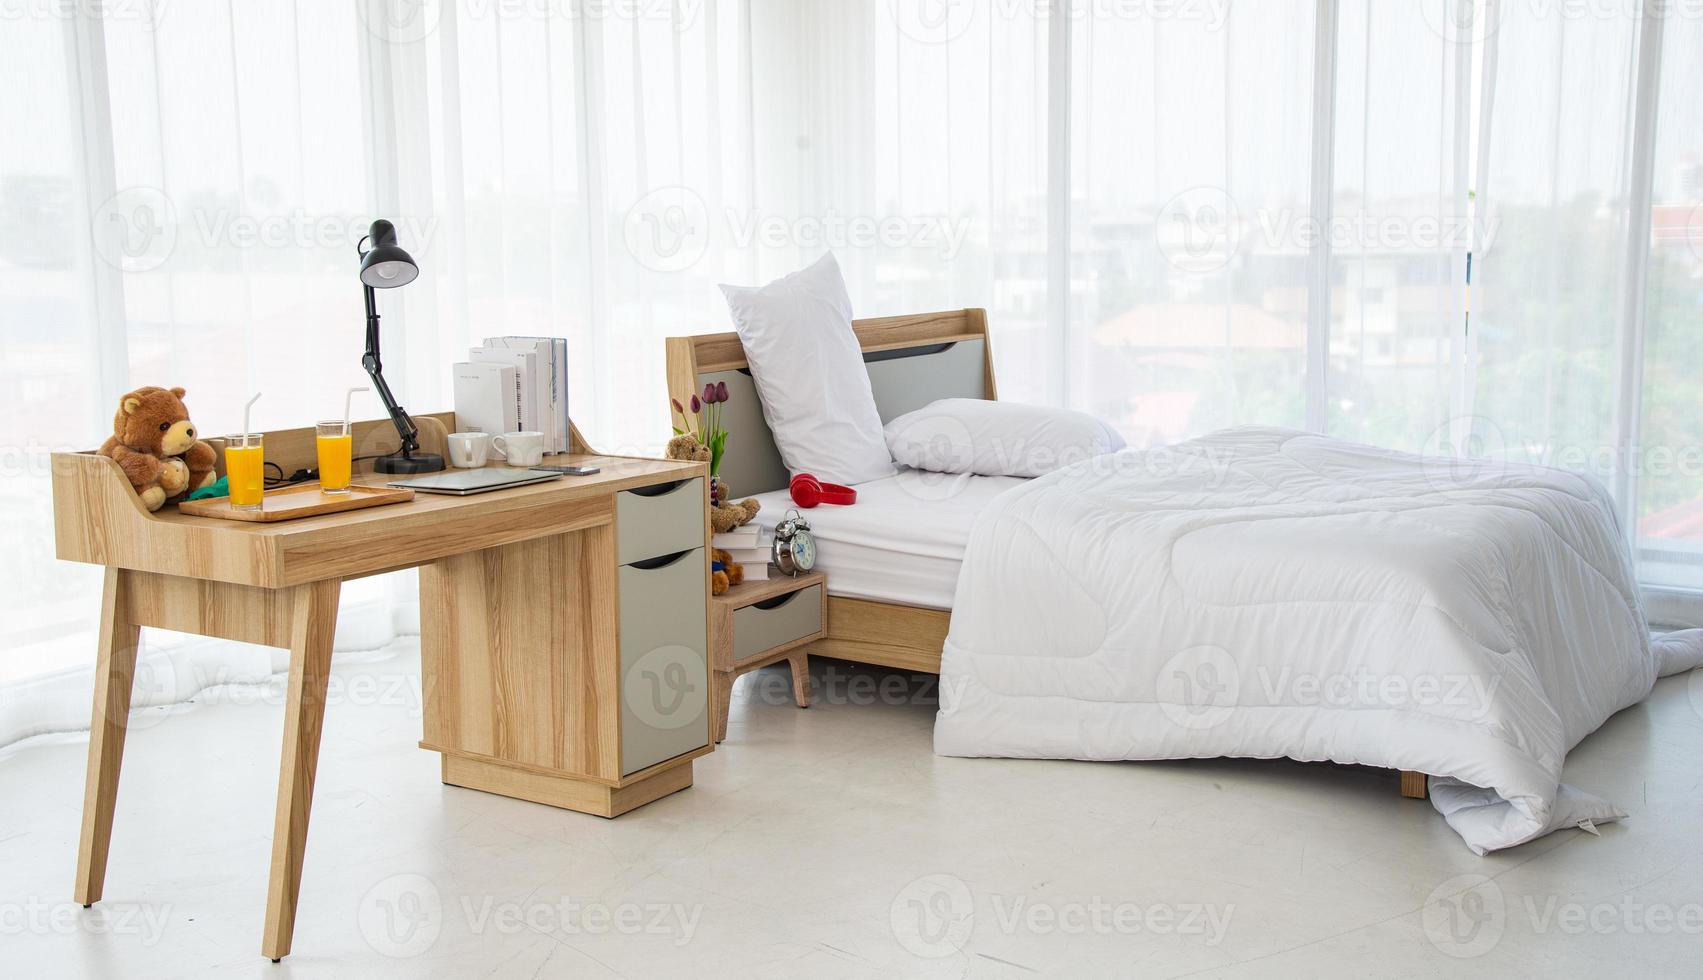 Das moderne oder minimalistische Innendesign des Schlafzimmers ist mit einem bequemen Doppelbett, weißer Bettwäsche wie Decken, Kissen und Holzmöbeln ausgestattet foto